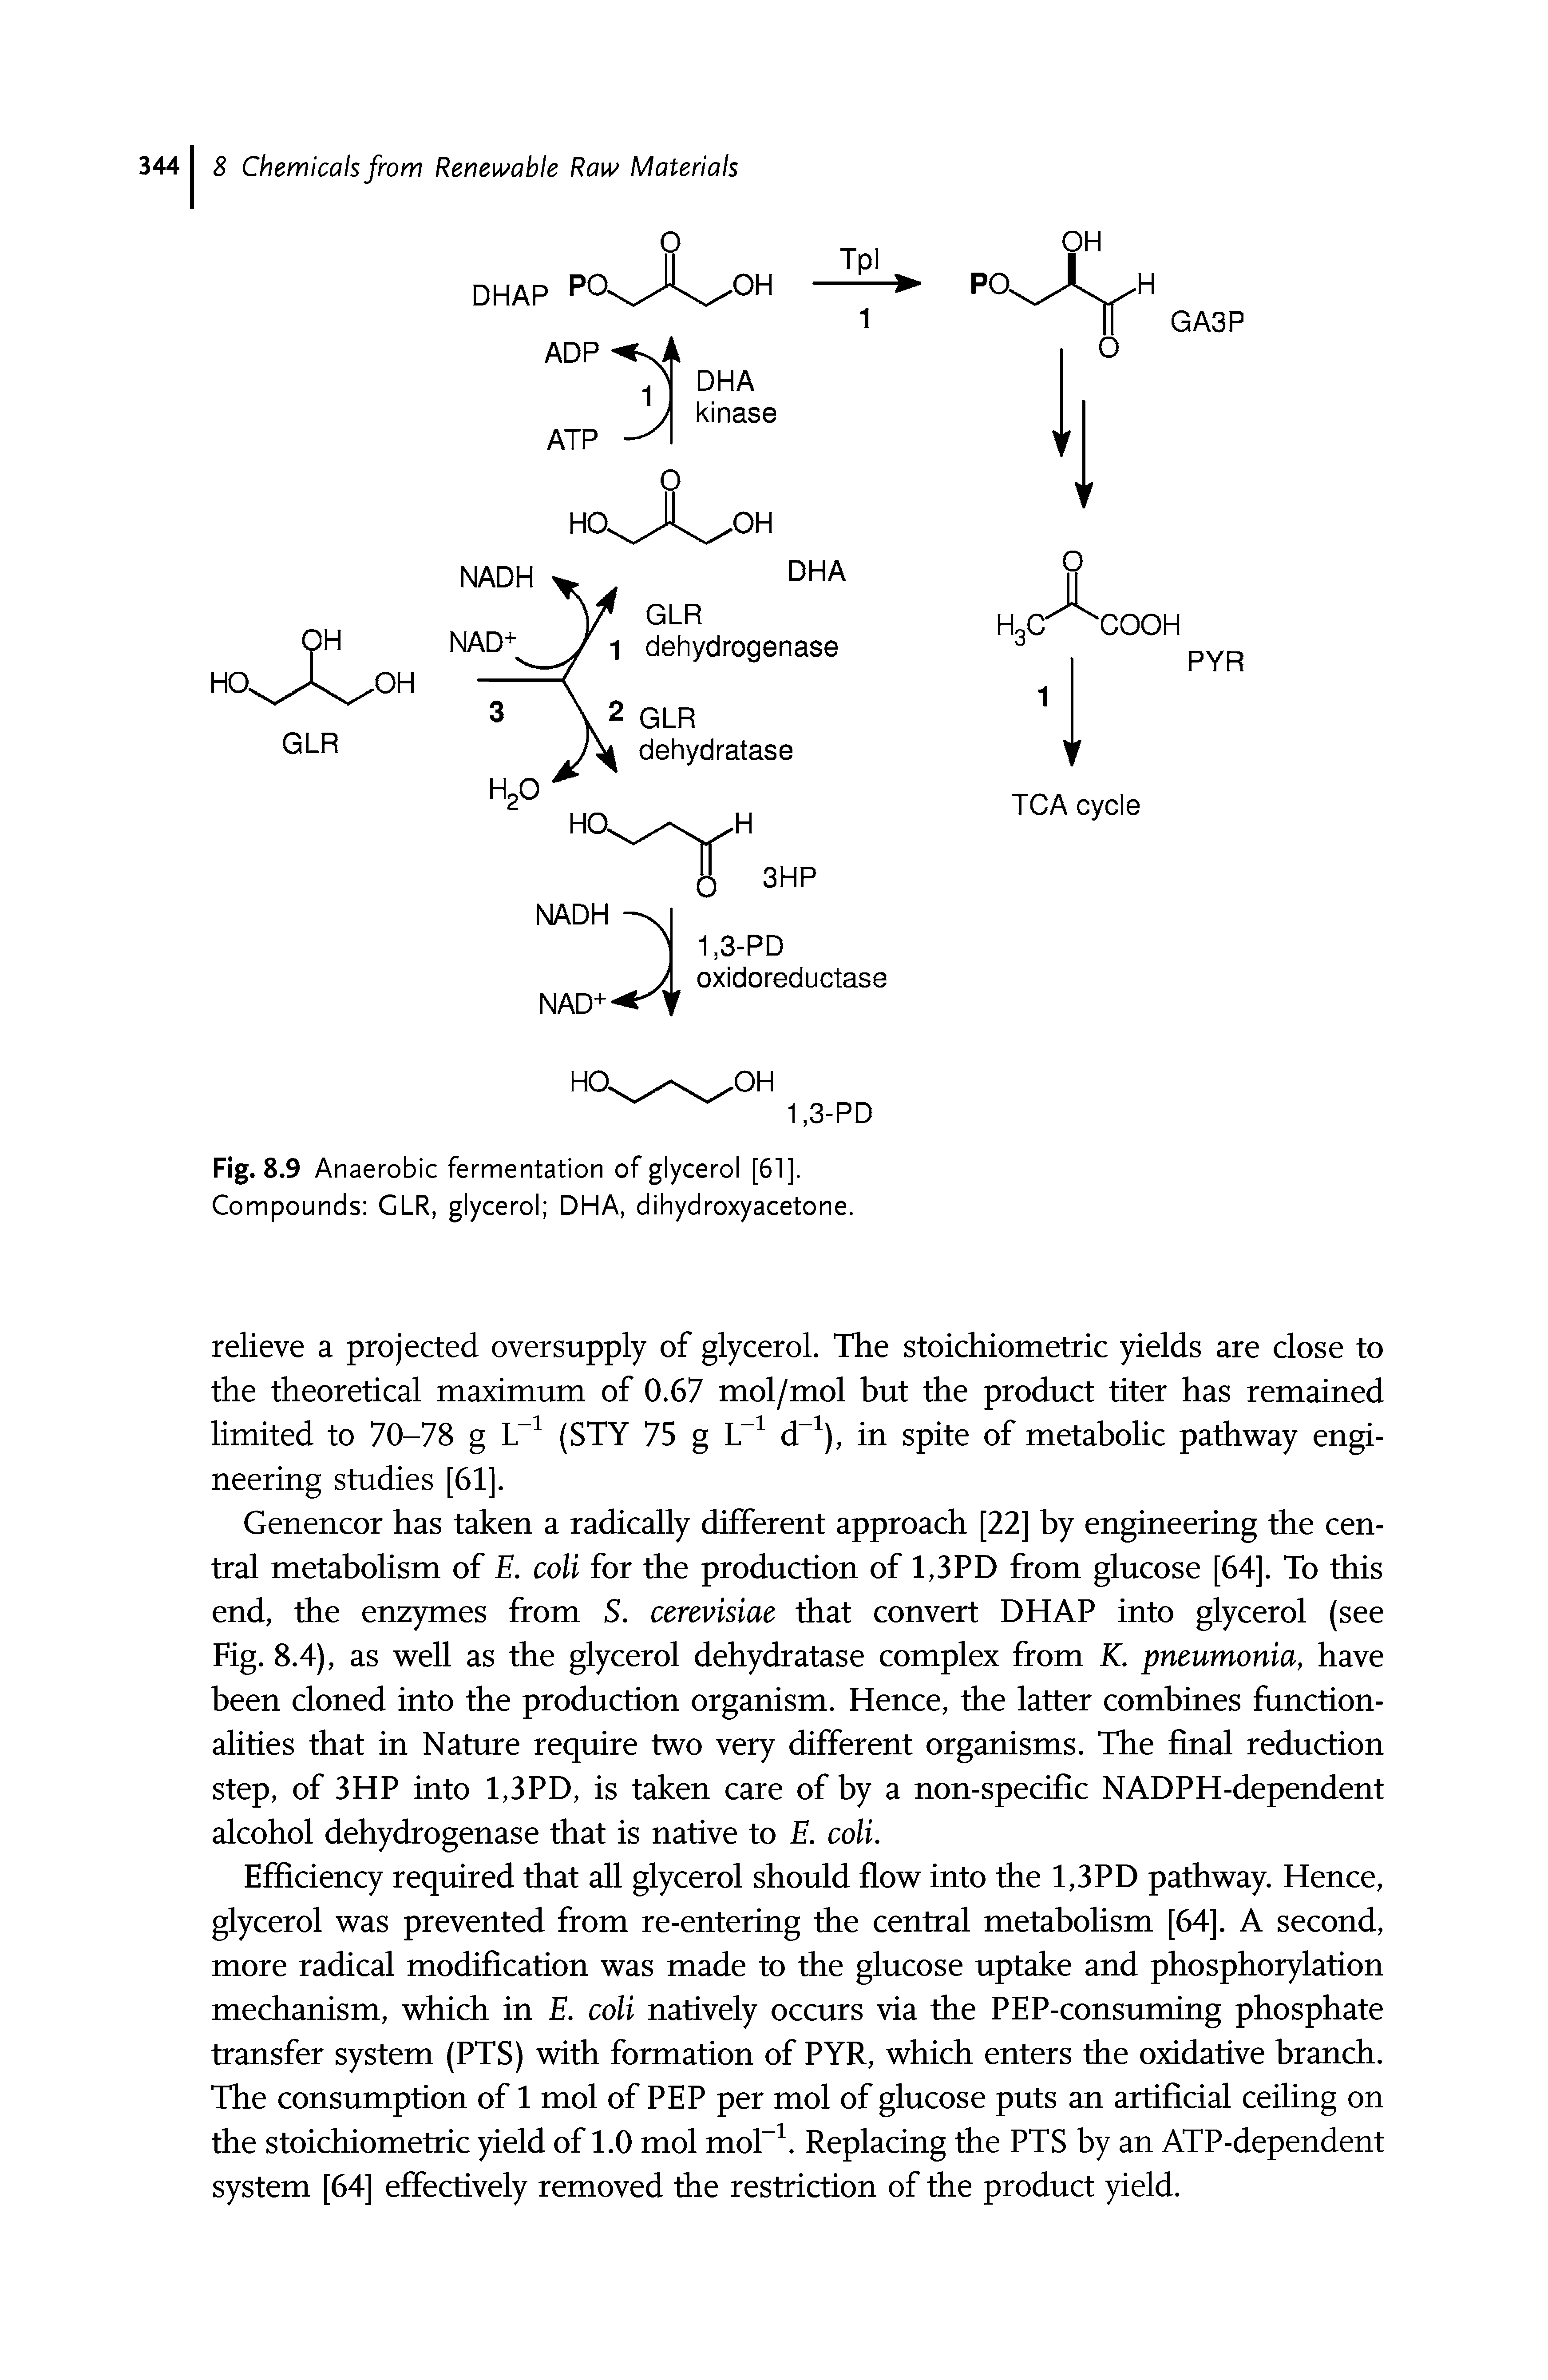 Fig. 8.9 Anaerobic fermentation of glycerol [61]. Compounds GLR, glycerol DHA, dihydroxyacetone.